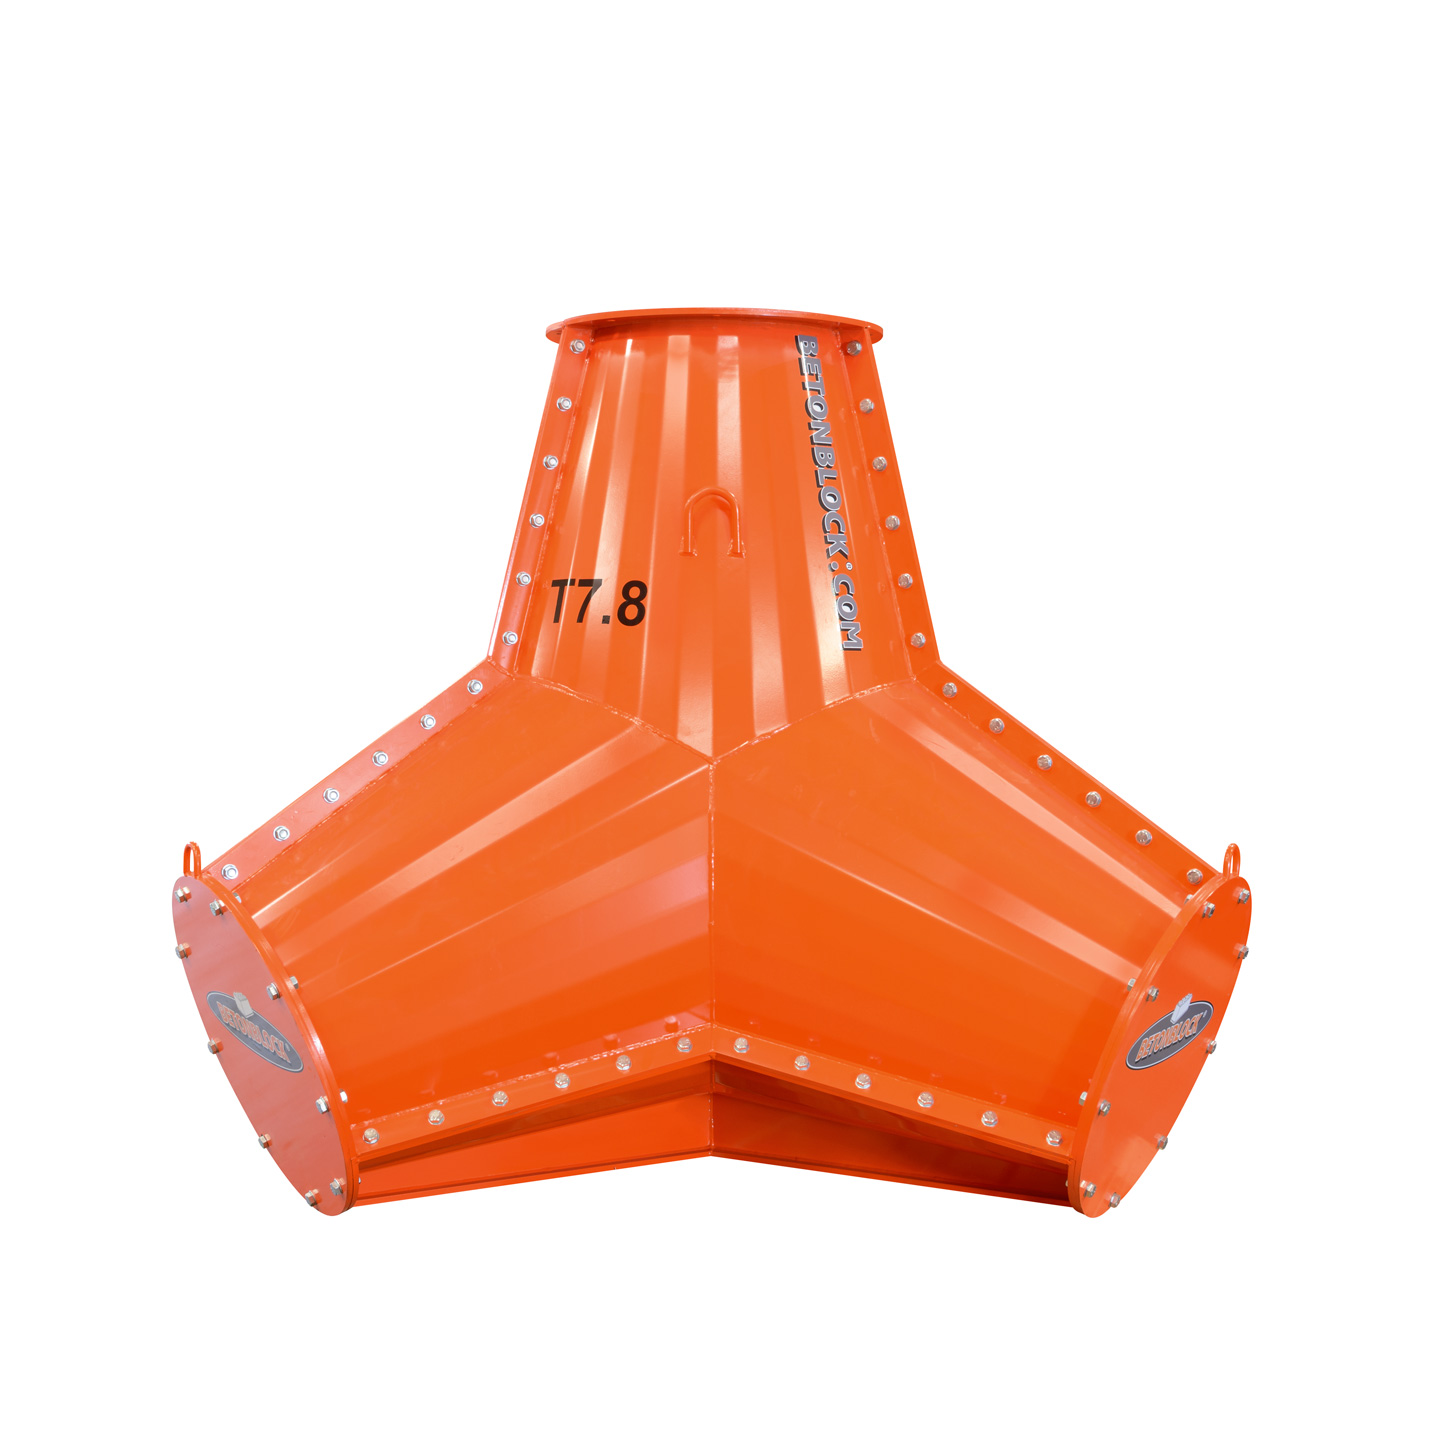 Moule tétrapode en acier orange pour réaliser de gros tétrapodes en béton de 7800 kg